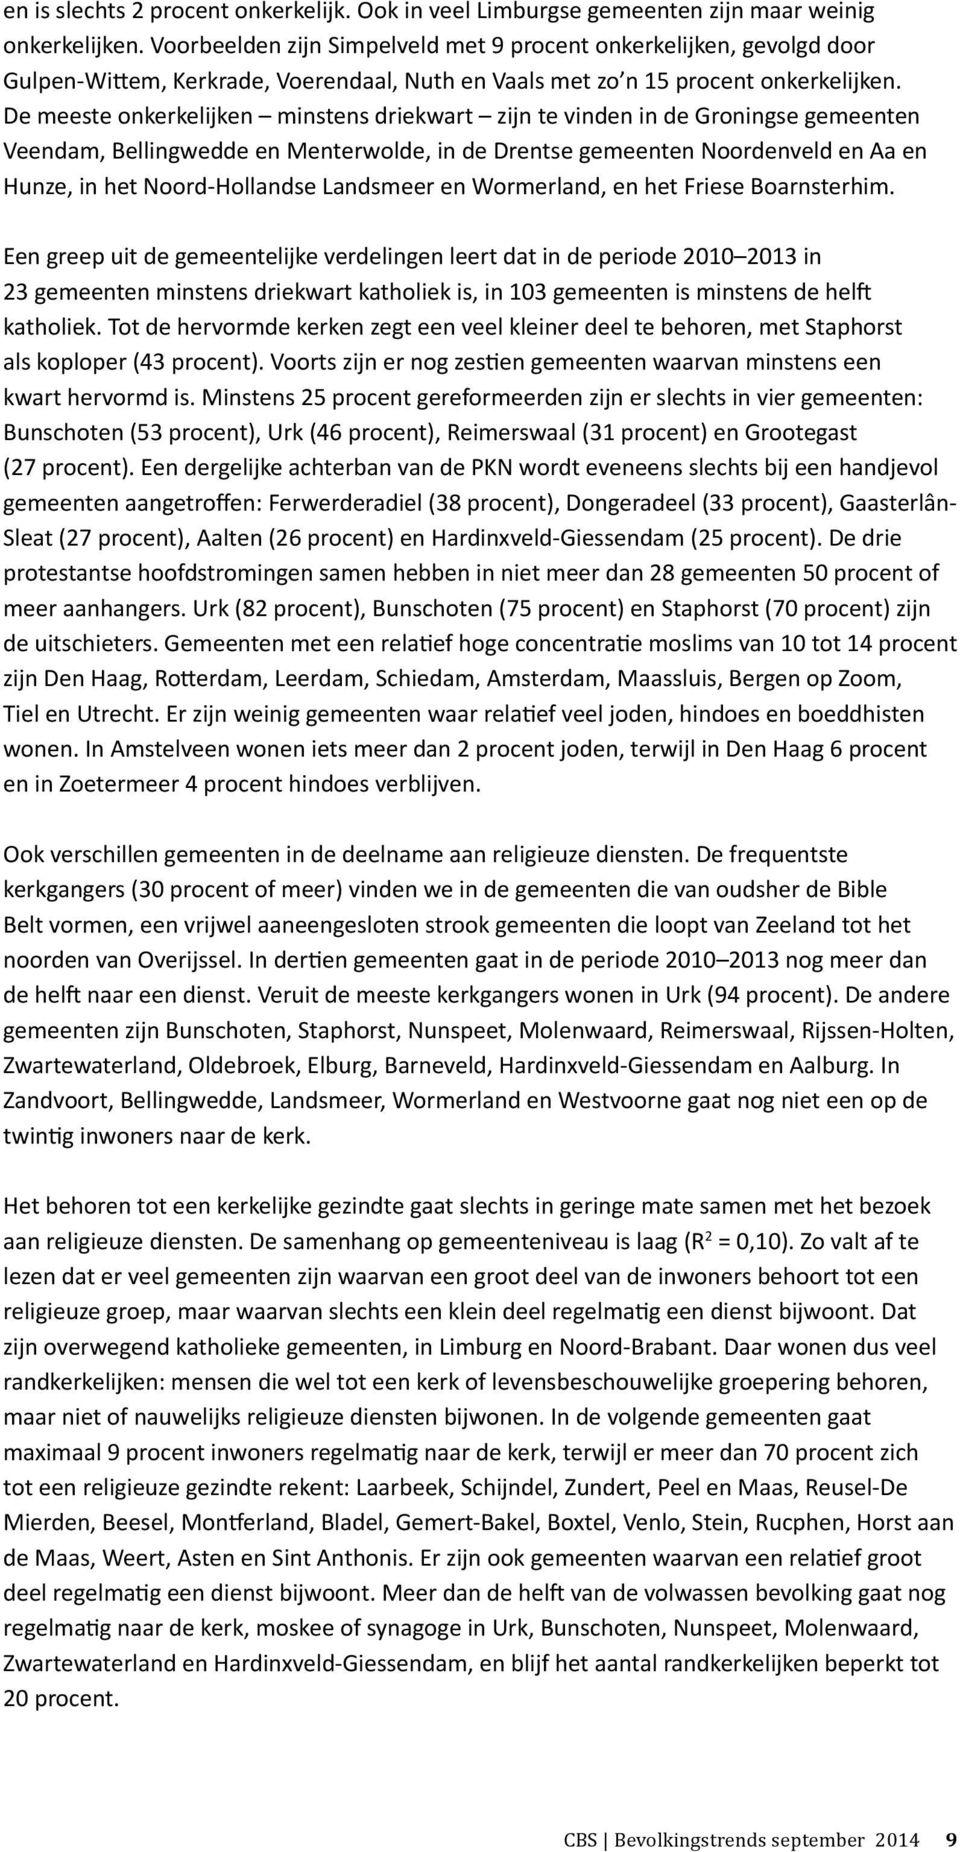 De meeste onkerkelijken minstens driekwart zijn te vinden in de Groningse gemeenten Veendam, Bellingwedde en Menterwolde, in de Drentse gemeenten Noordenveld en Aa en Hunze, in het Noord-Hollandse